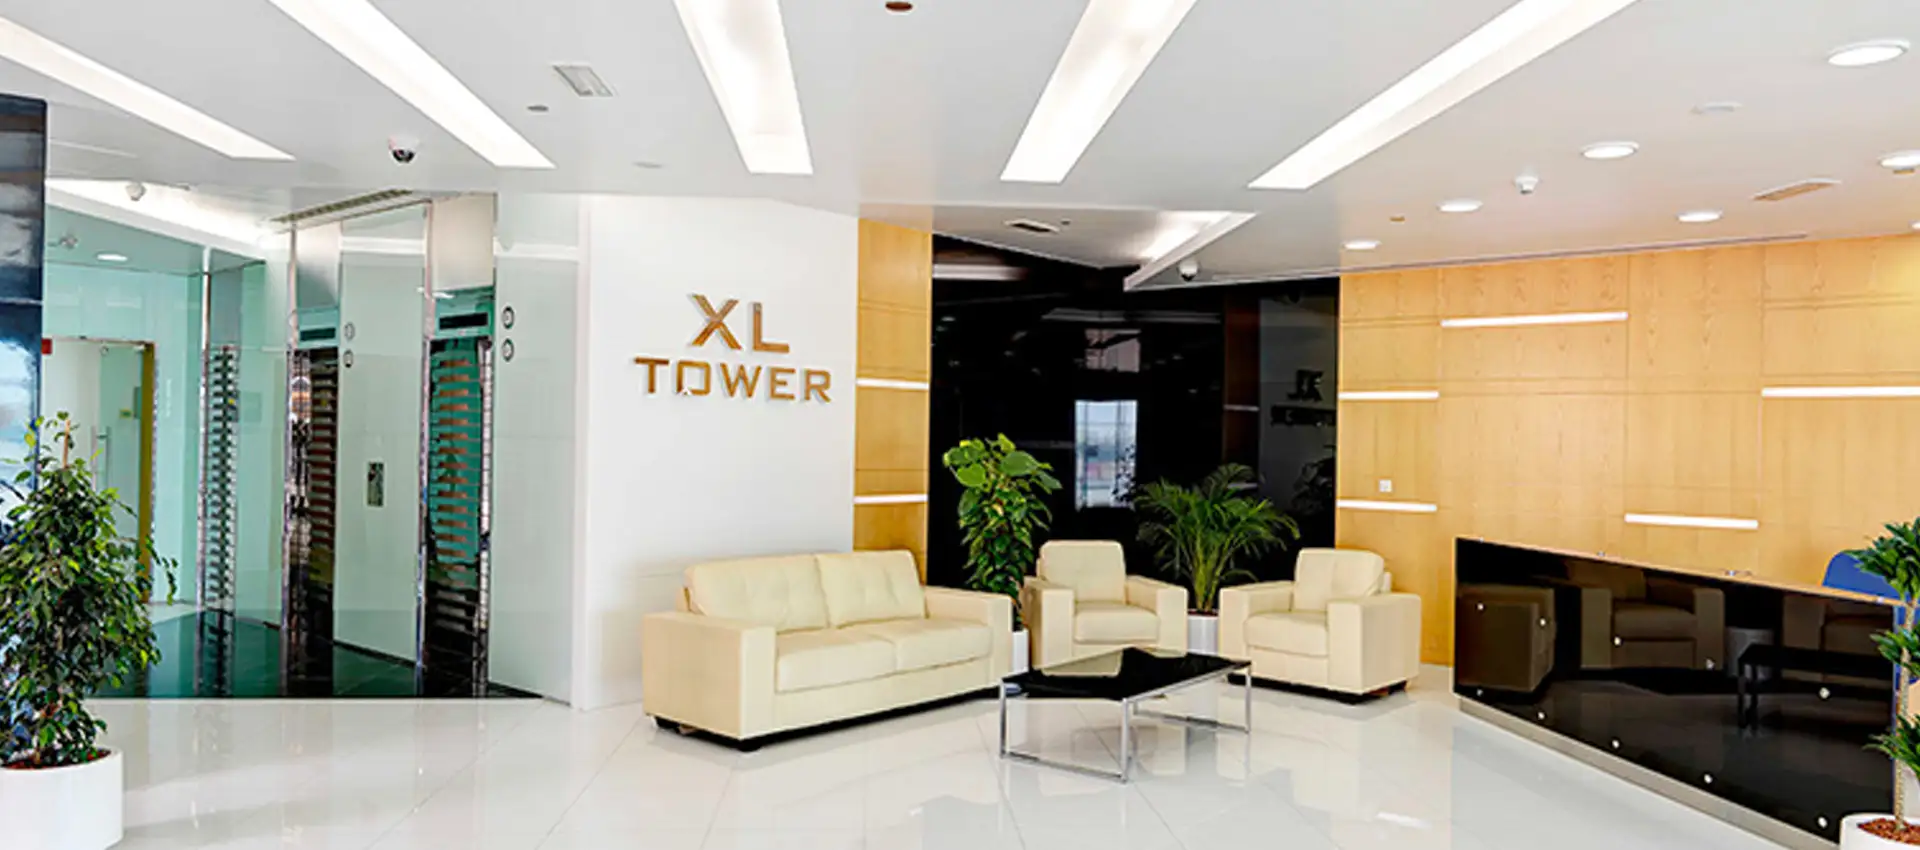 XL Tower